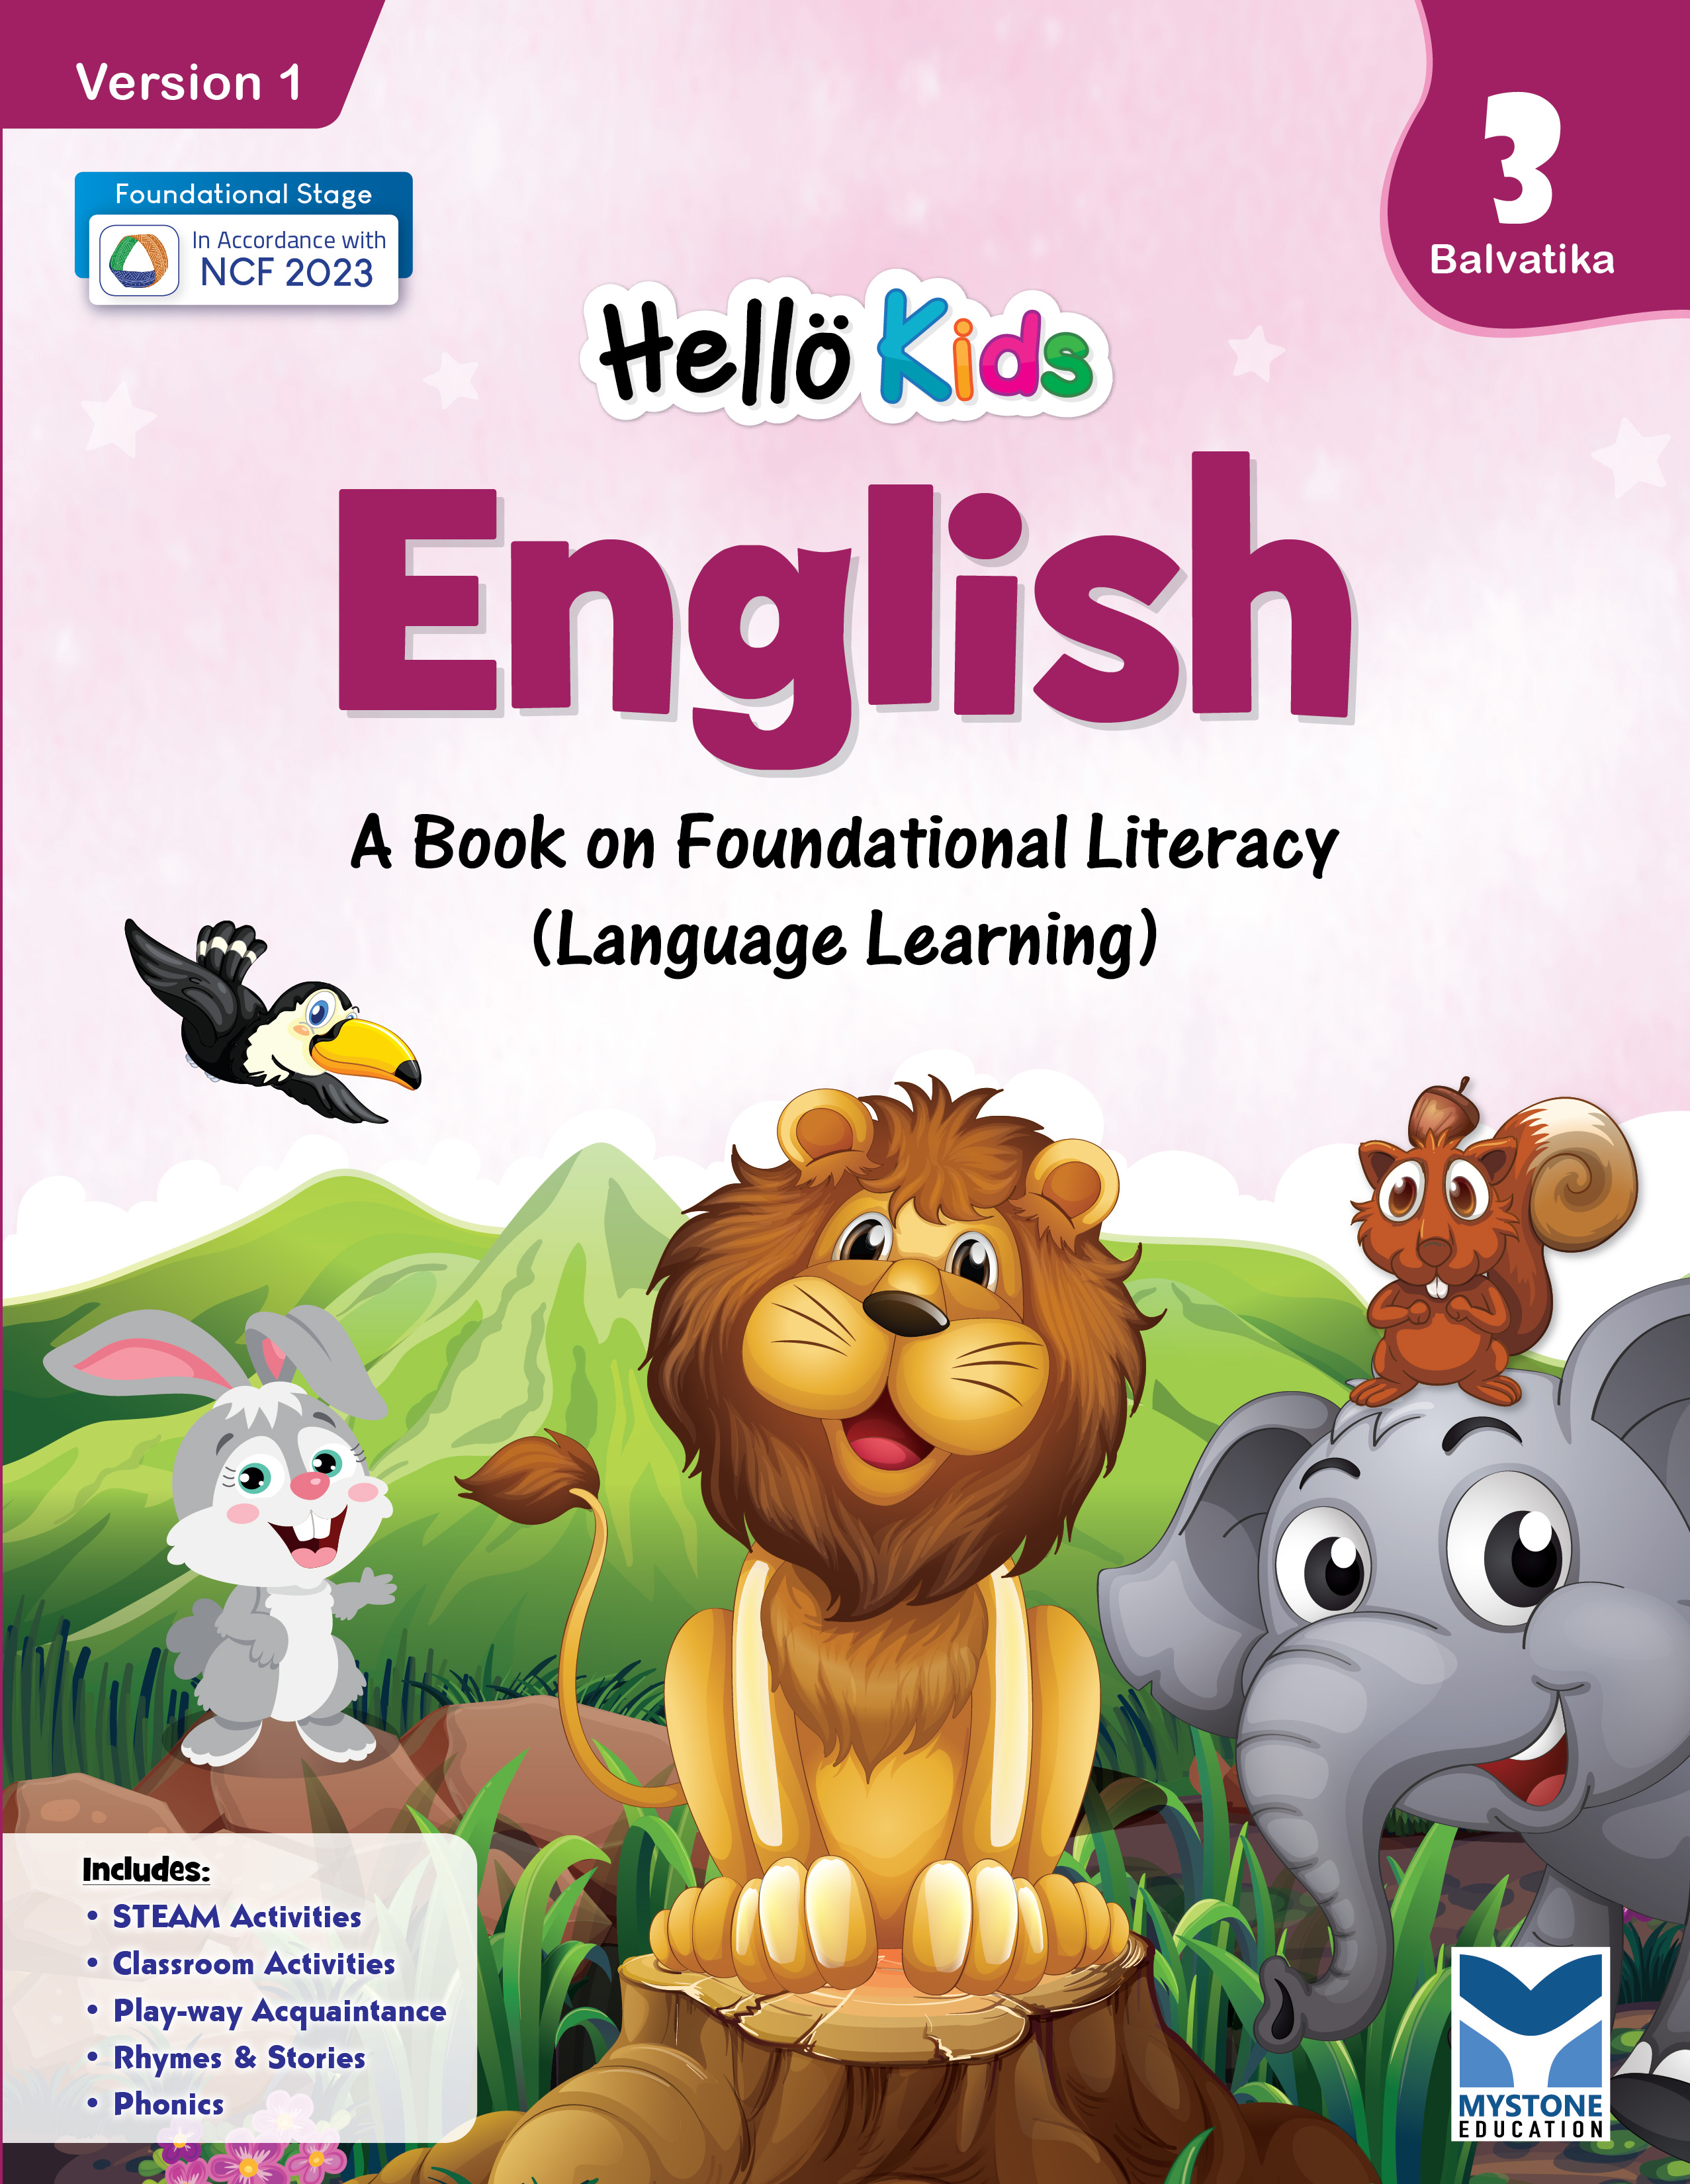 Hello Kids English Balvatika 3 Ver. 1